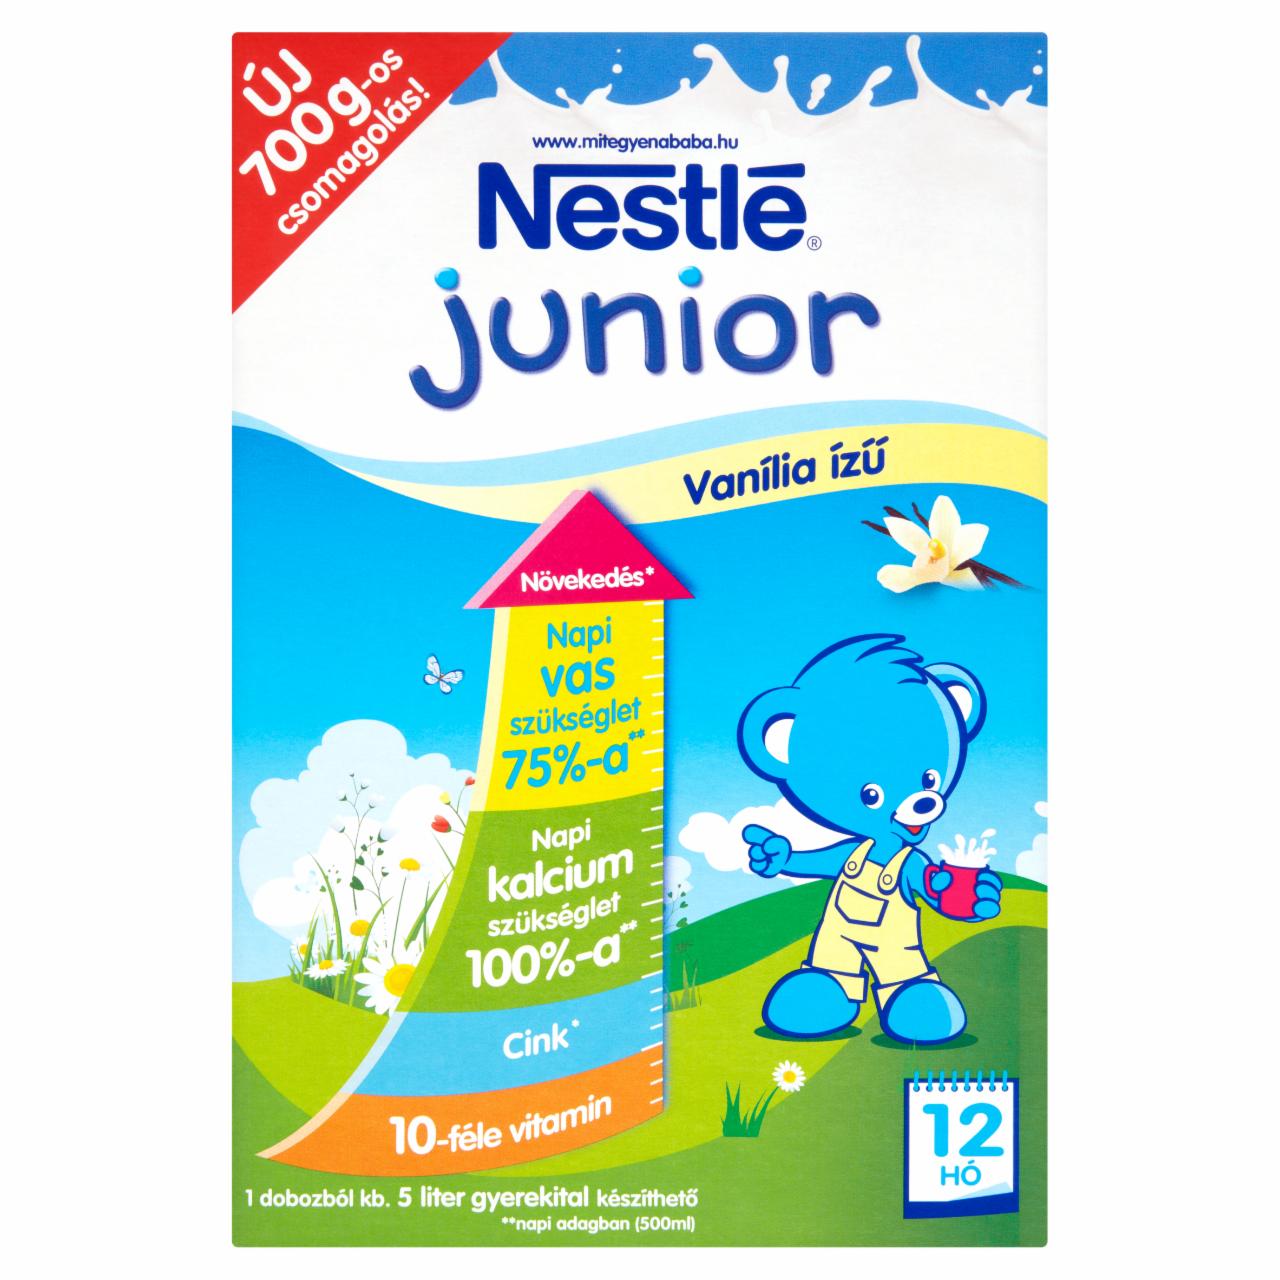 Képek - Nestlé Junior vanília ízű gyerekital 12 hónapos kortól 700 g